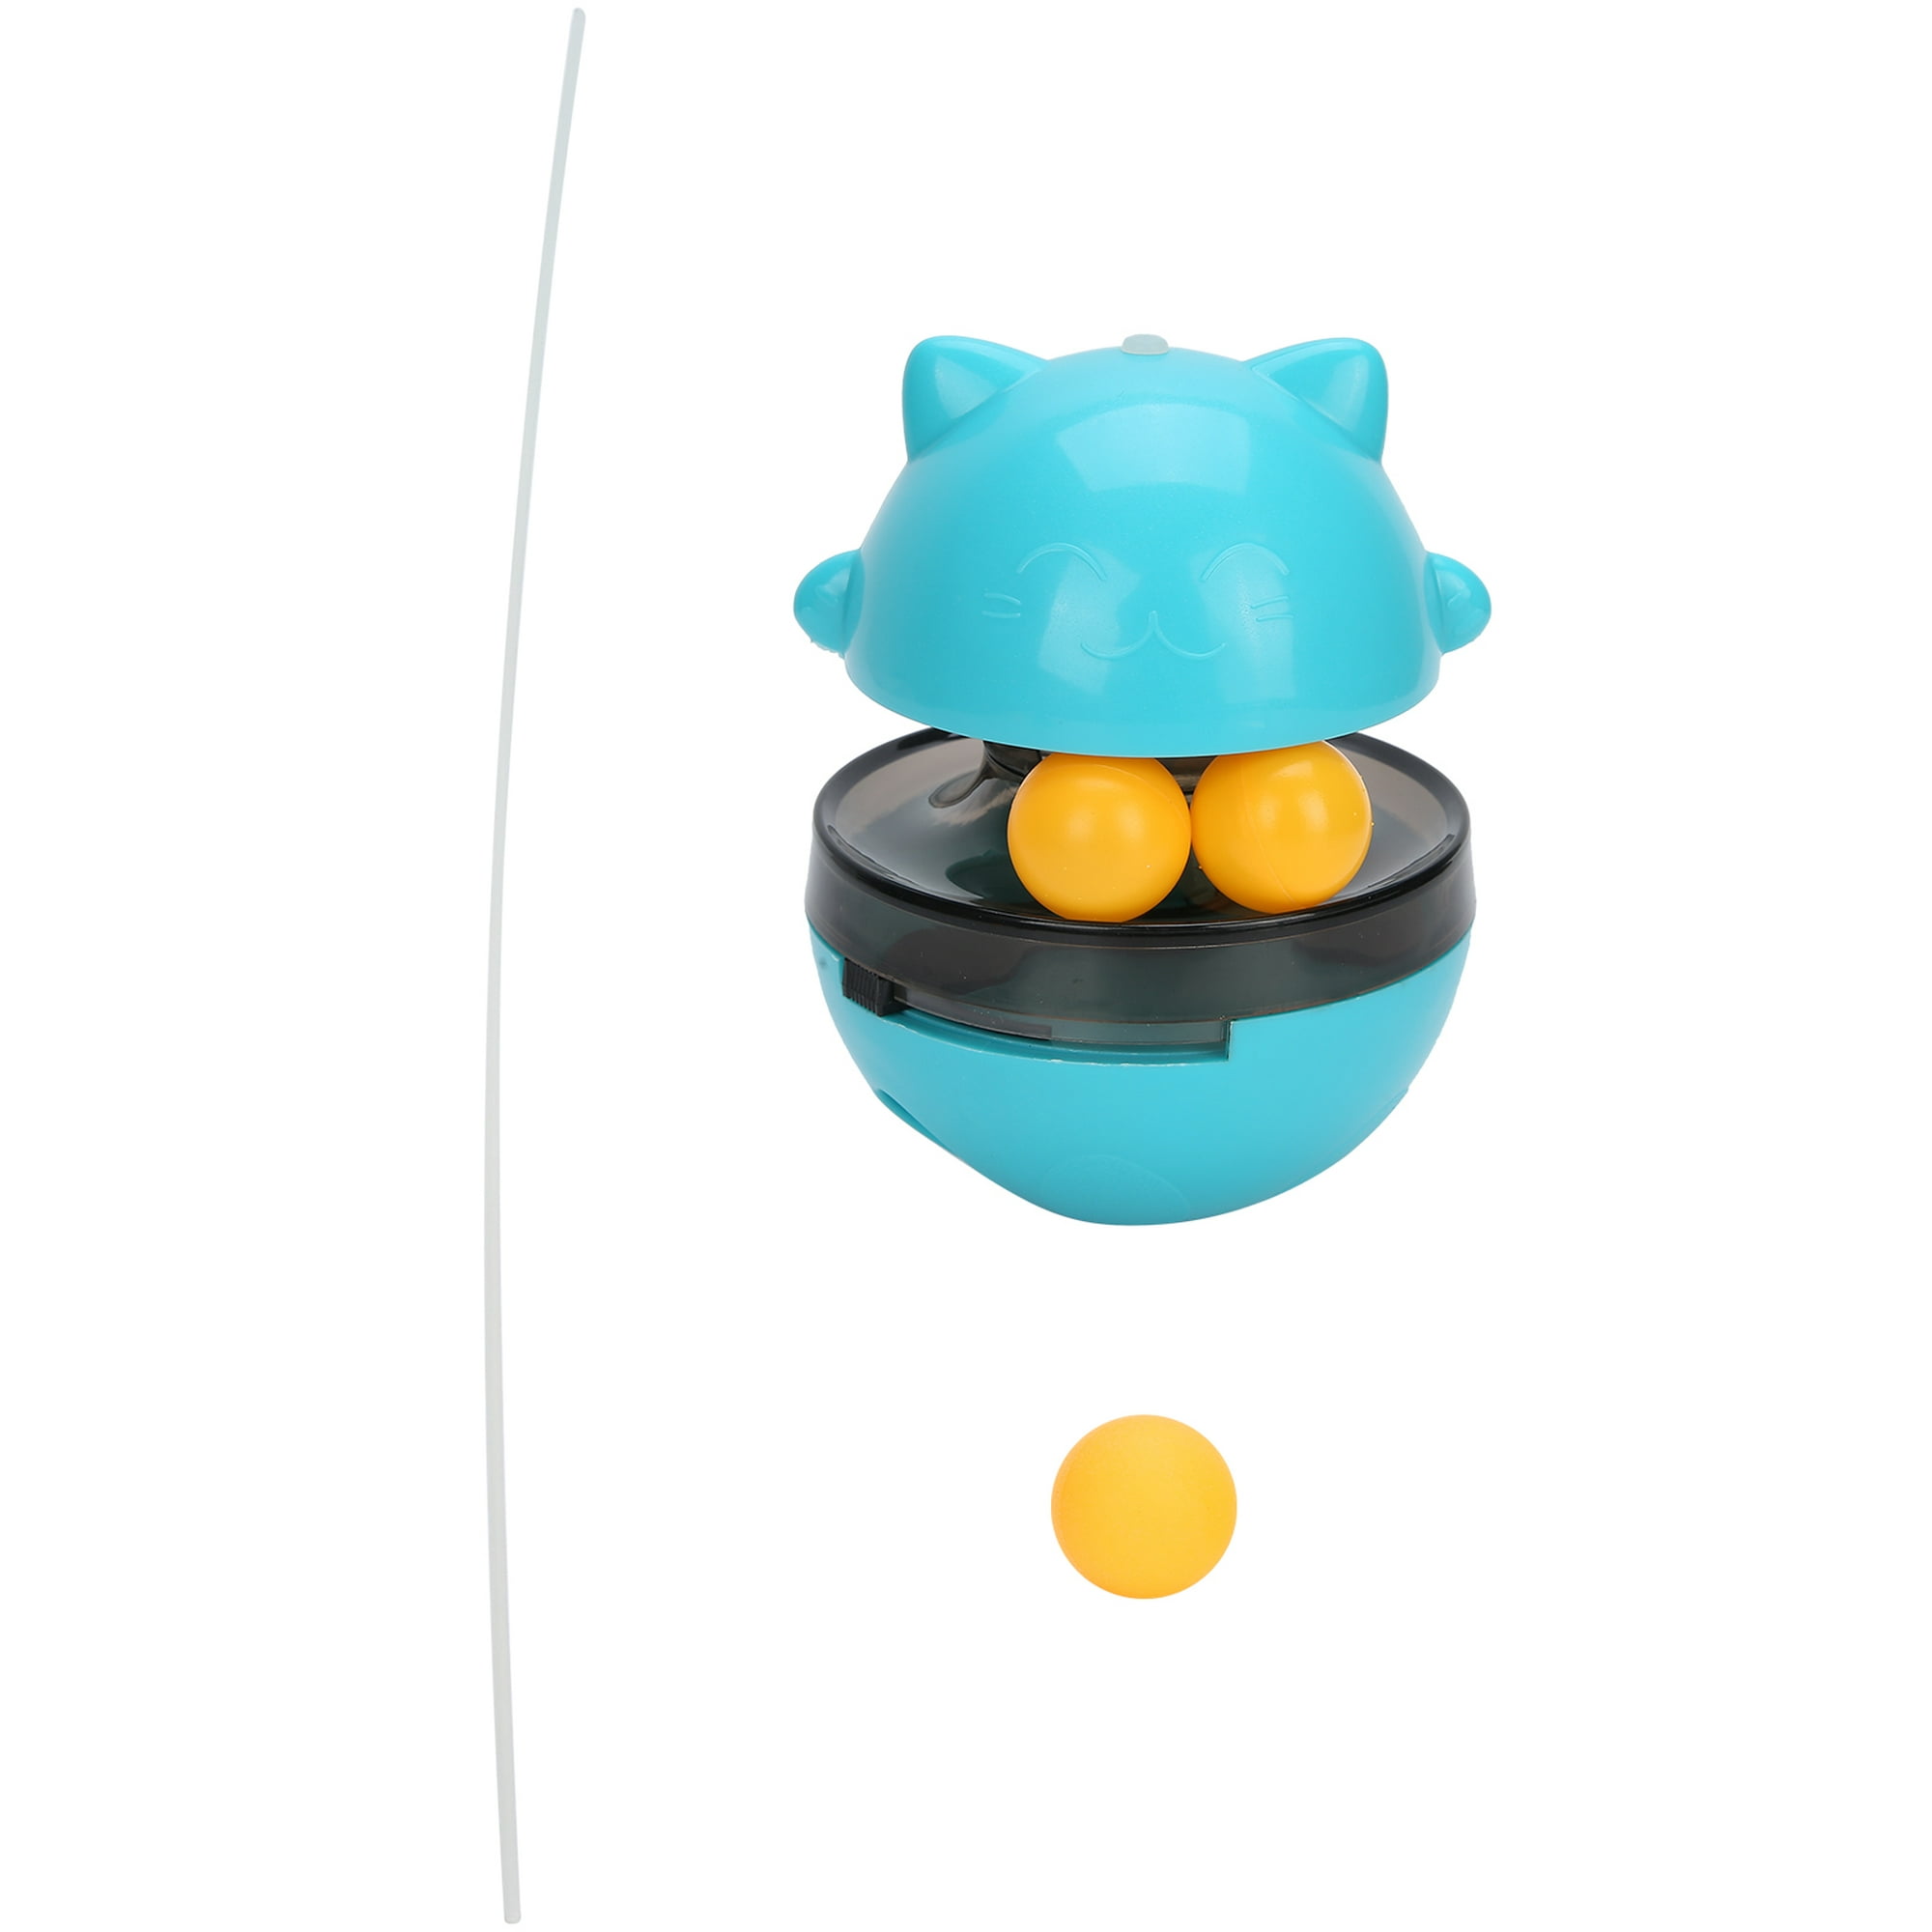 Gato brinquedo de escape dispensador de alimentos brinquedos com 360 roda  rotatable treinamento interativo exercício jogo alimentação dispositivo